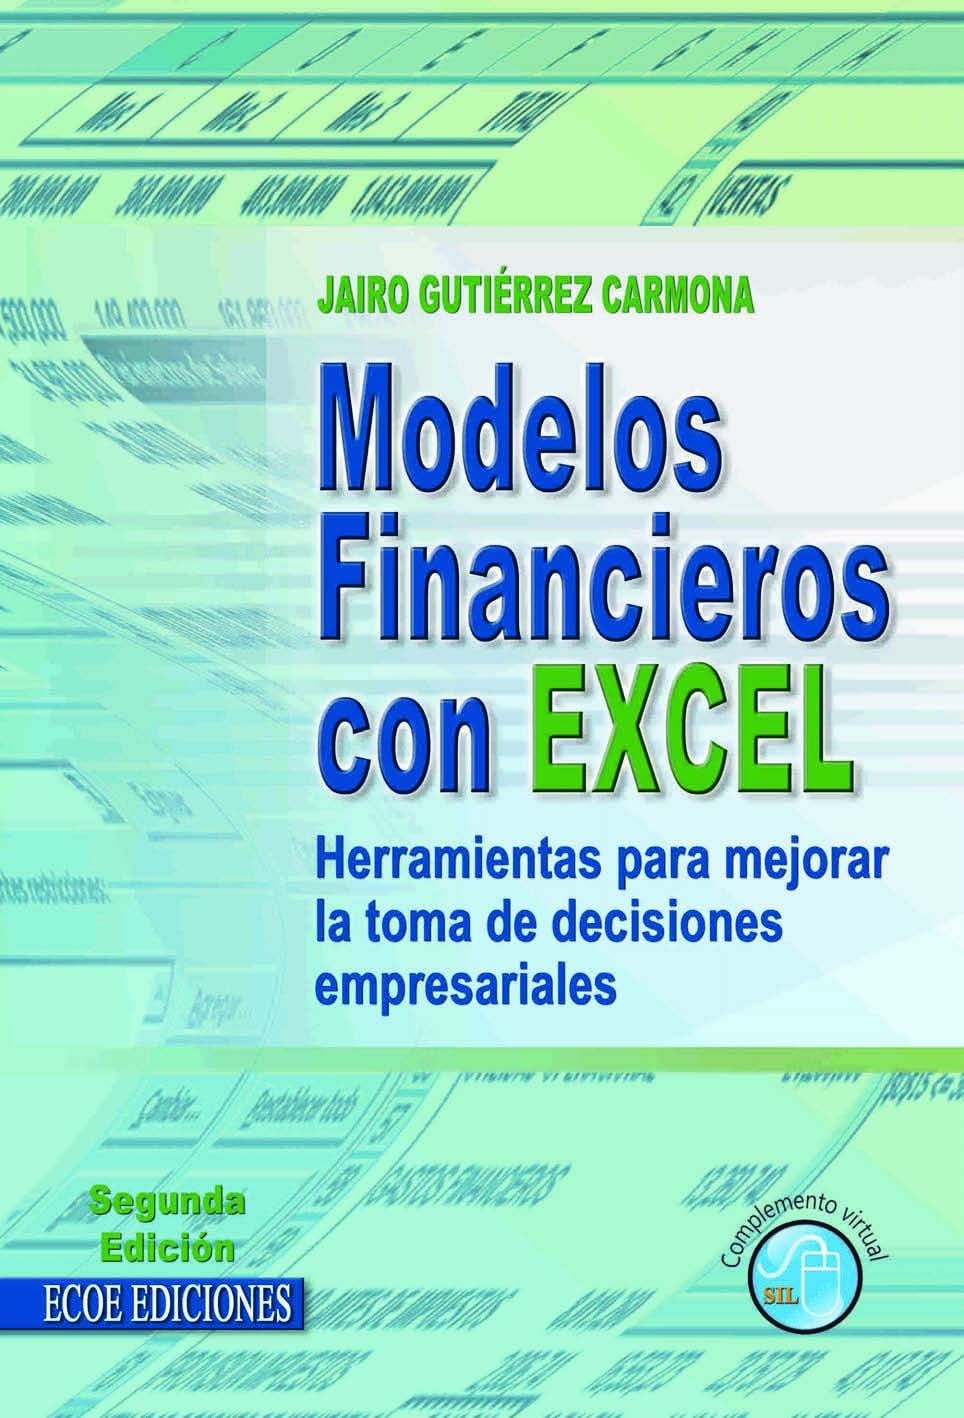 Modelos Financieras con Excel 2 Edición Jairo Gutiérrez Carmona PDF